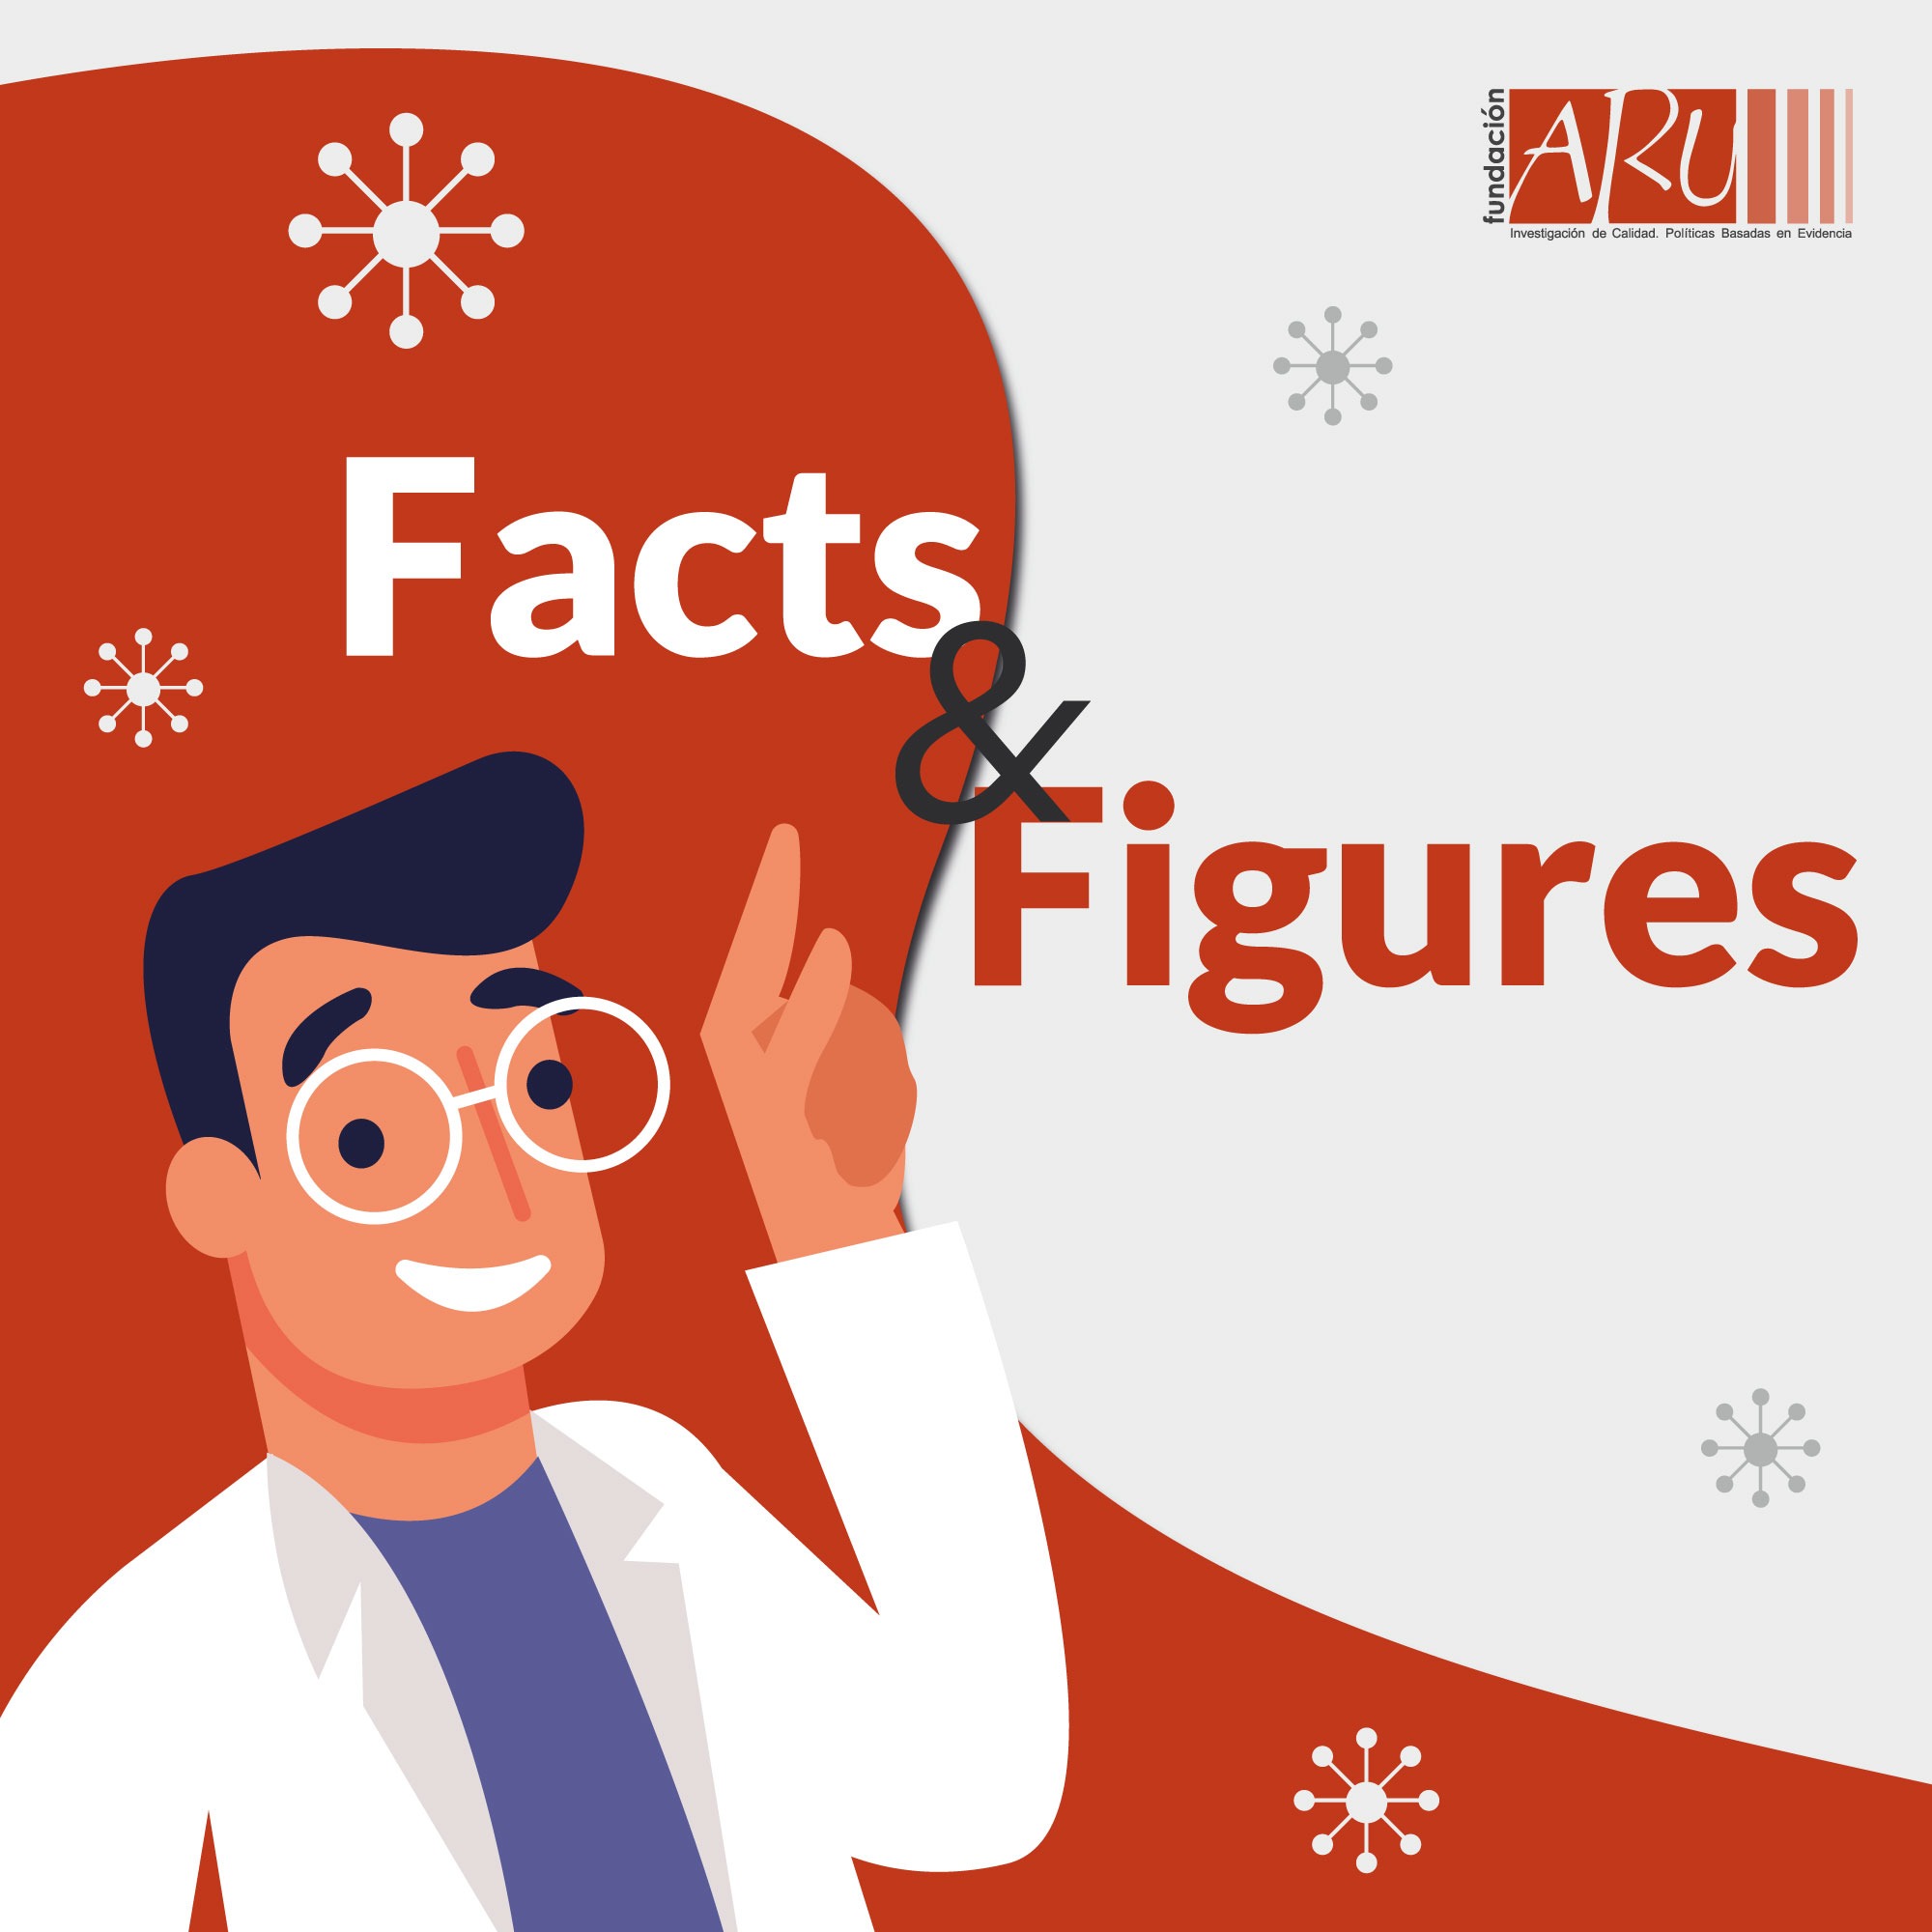 La Fundación Aru lanza “Facts & Figures”: una sección para difundir datos e impulsar el desarrollo de investigadores jóvenes